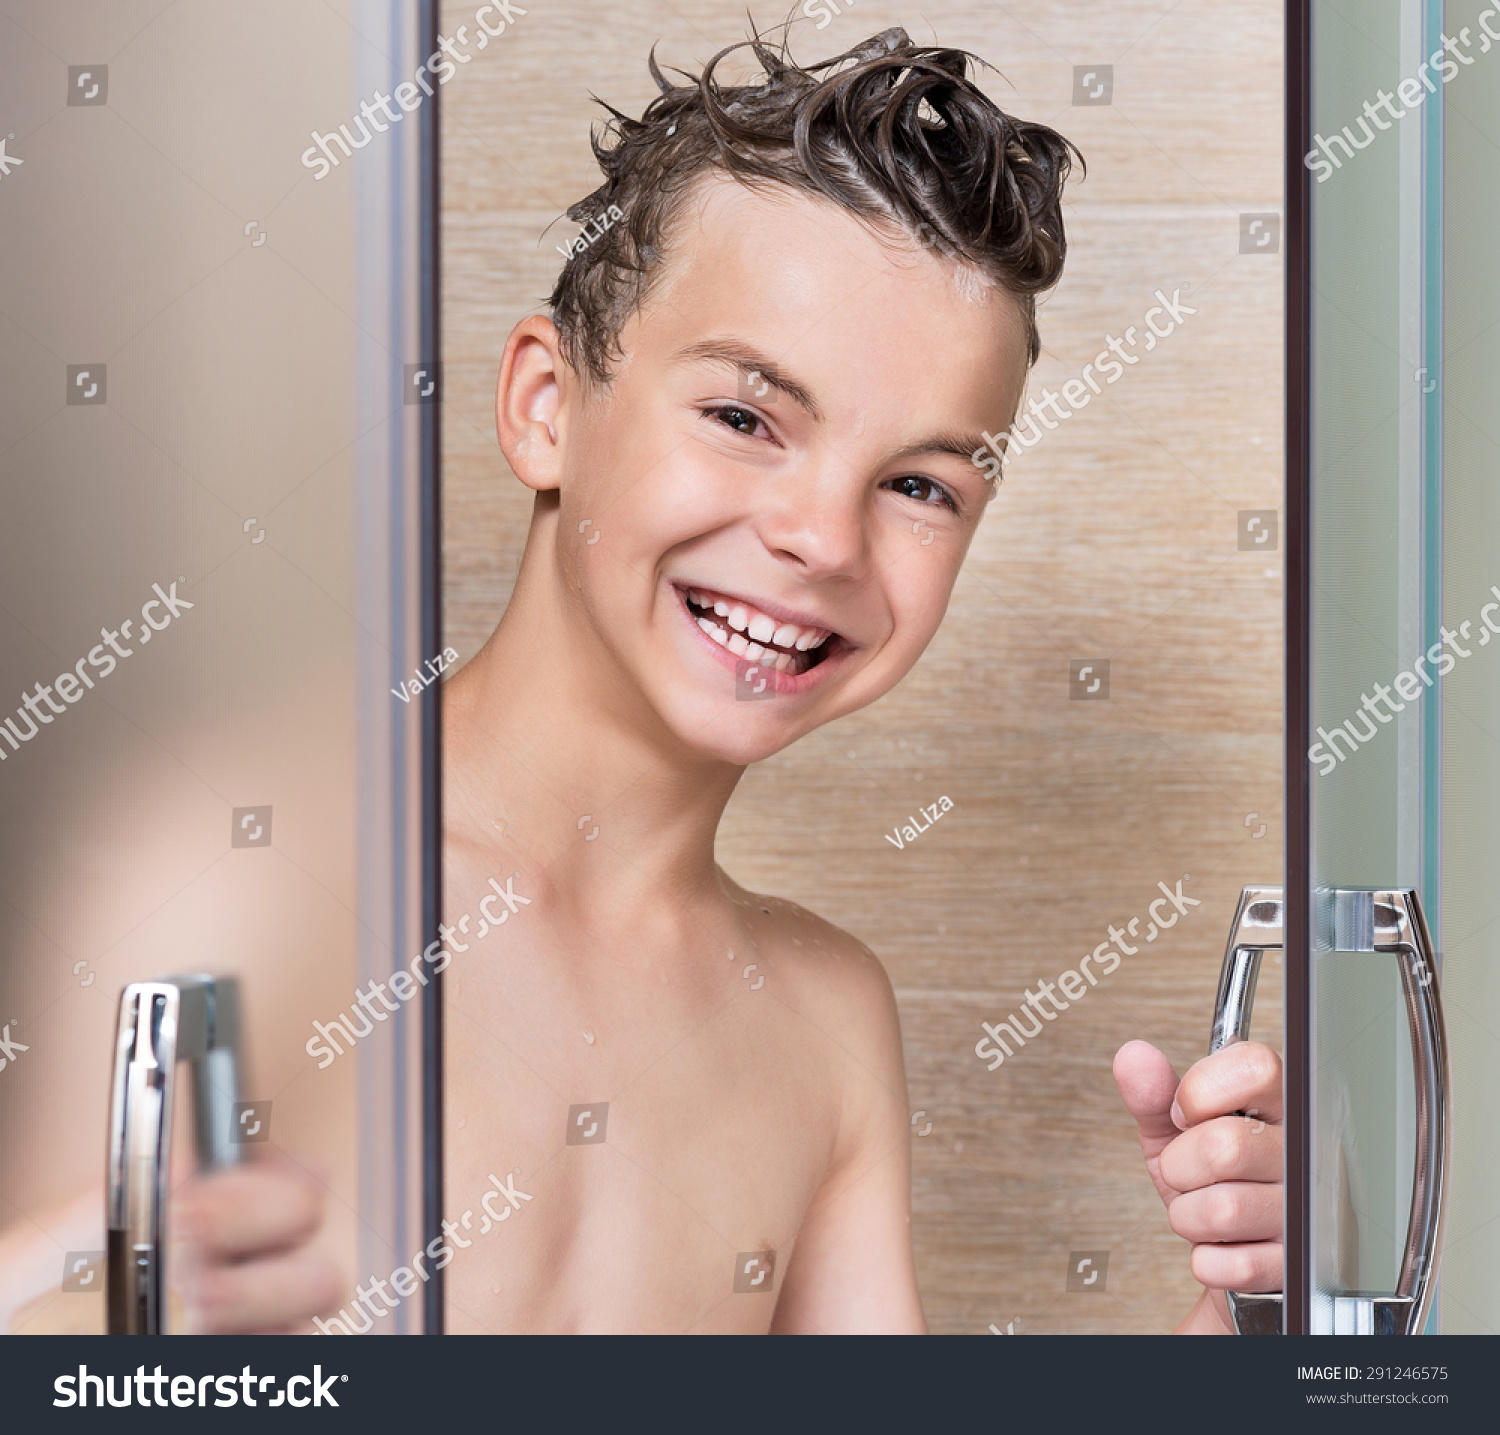 Teen In The Bathroom 37